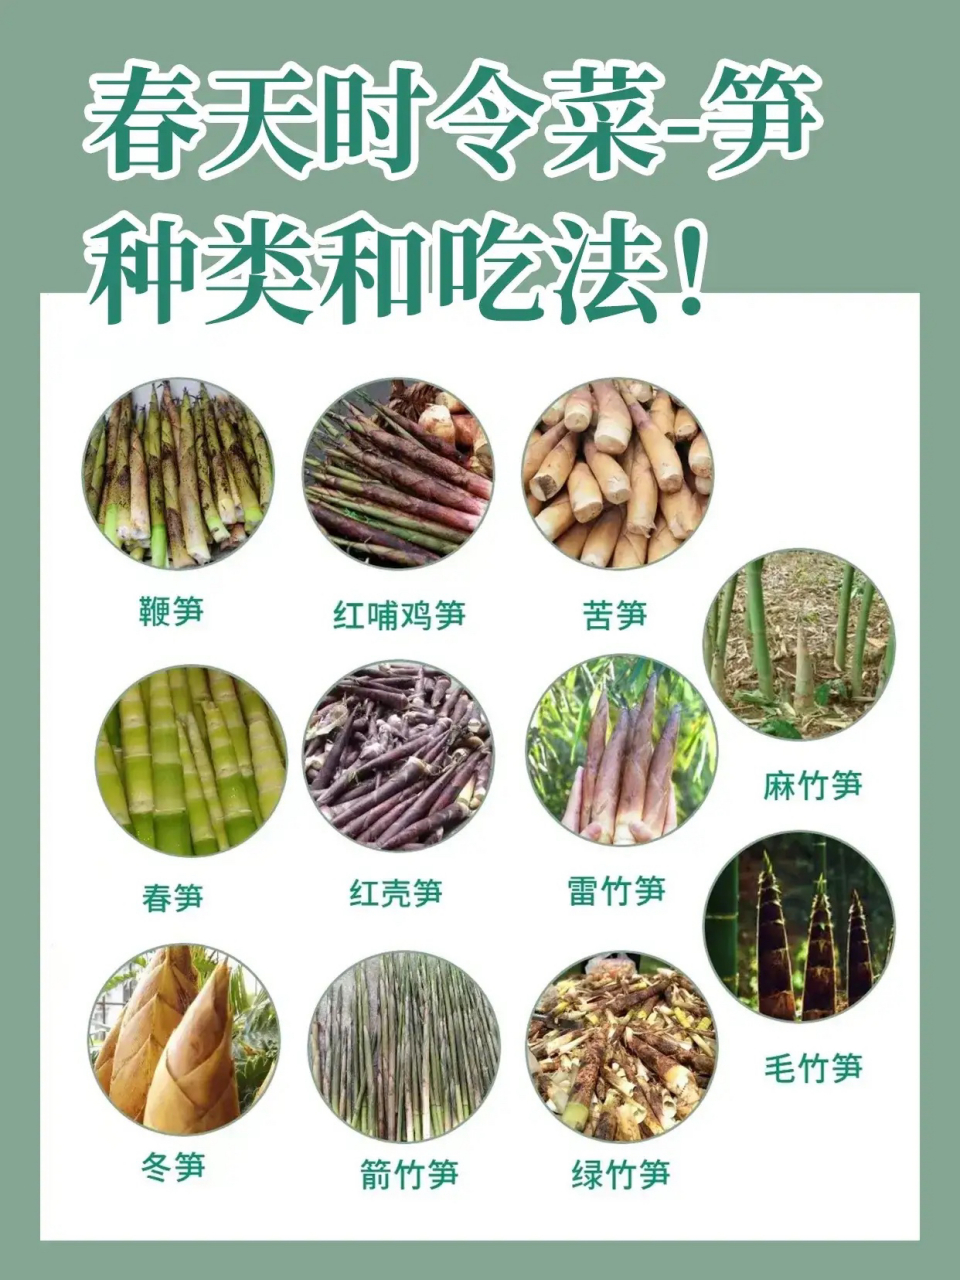 笋是竹子初从土里长出的嫩芽,味鲜美,可以做菜 竹笋是竹的幼芽